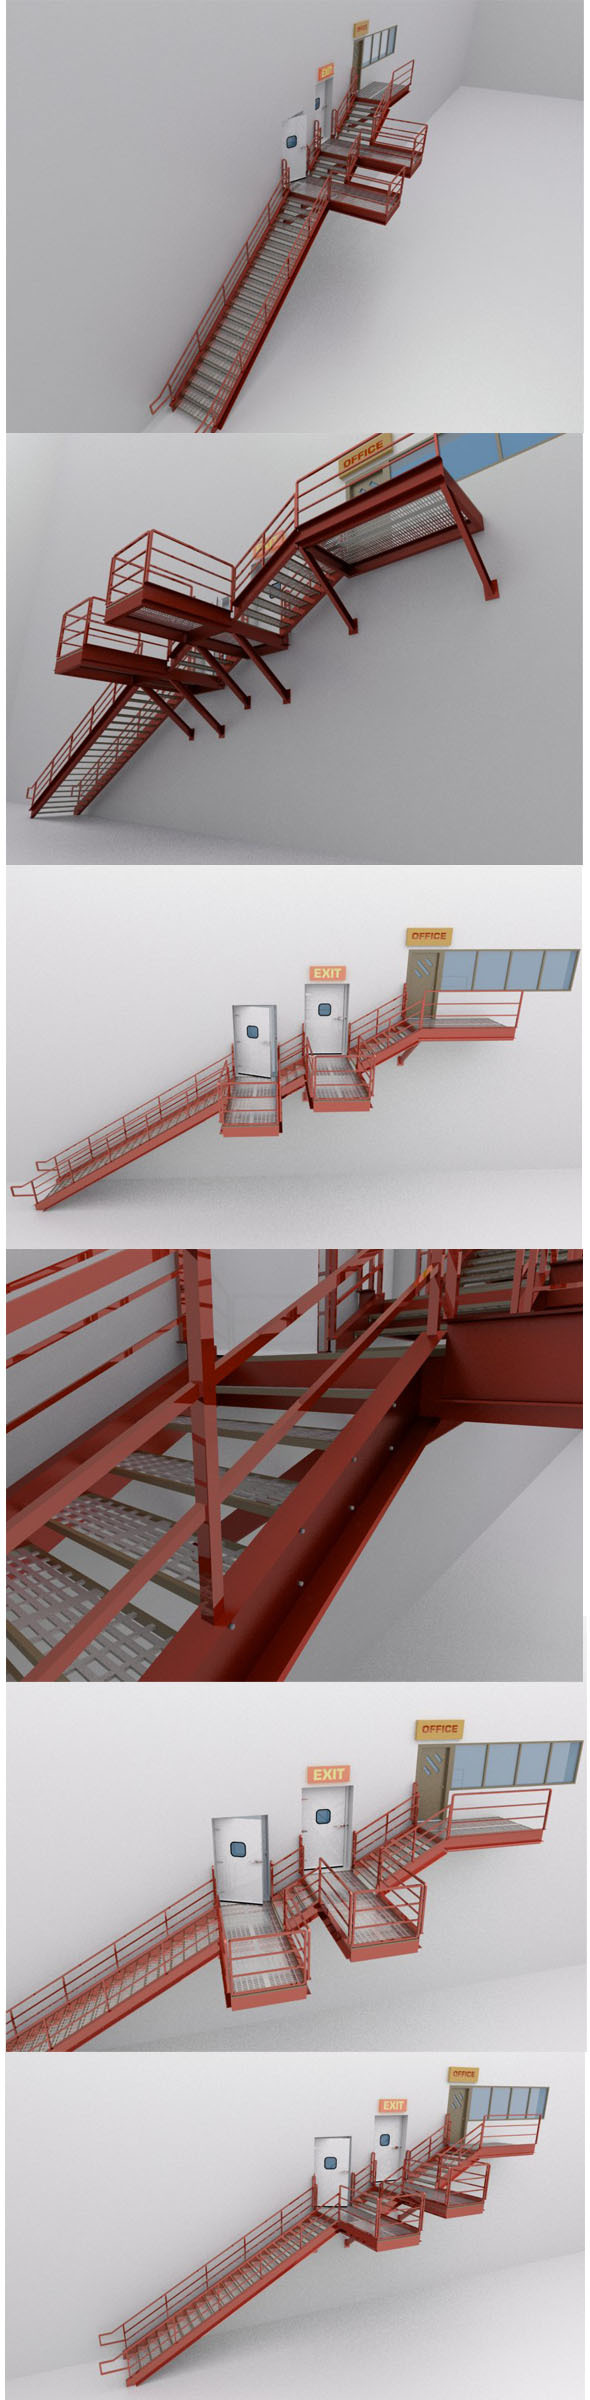 Factorys Metal Stairs - 3Docean 13088267